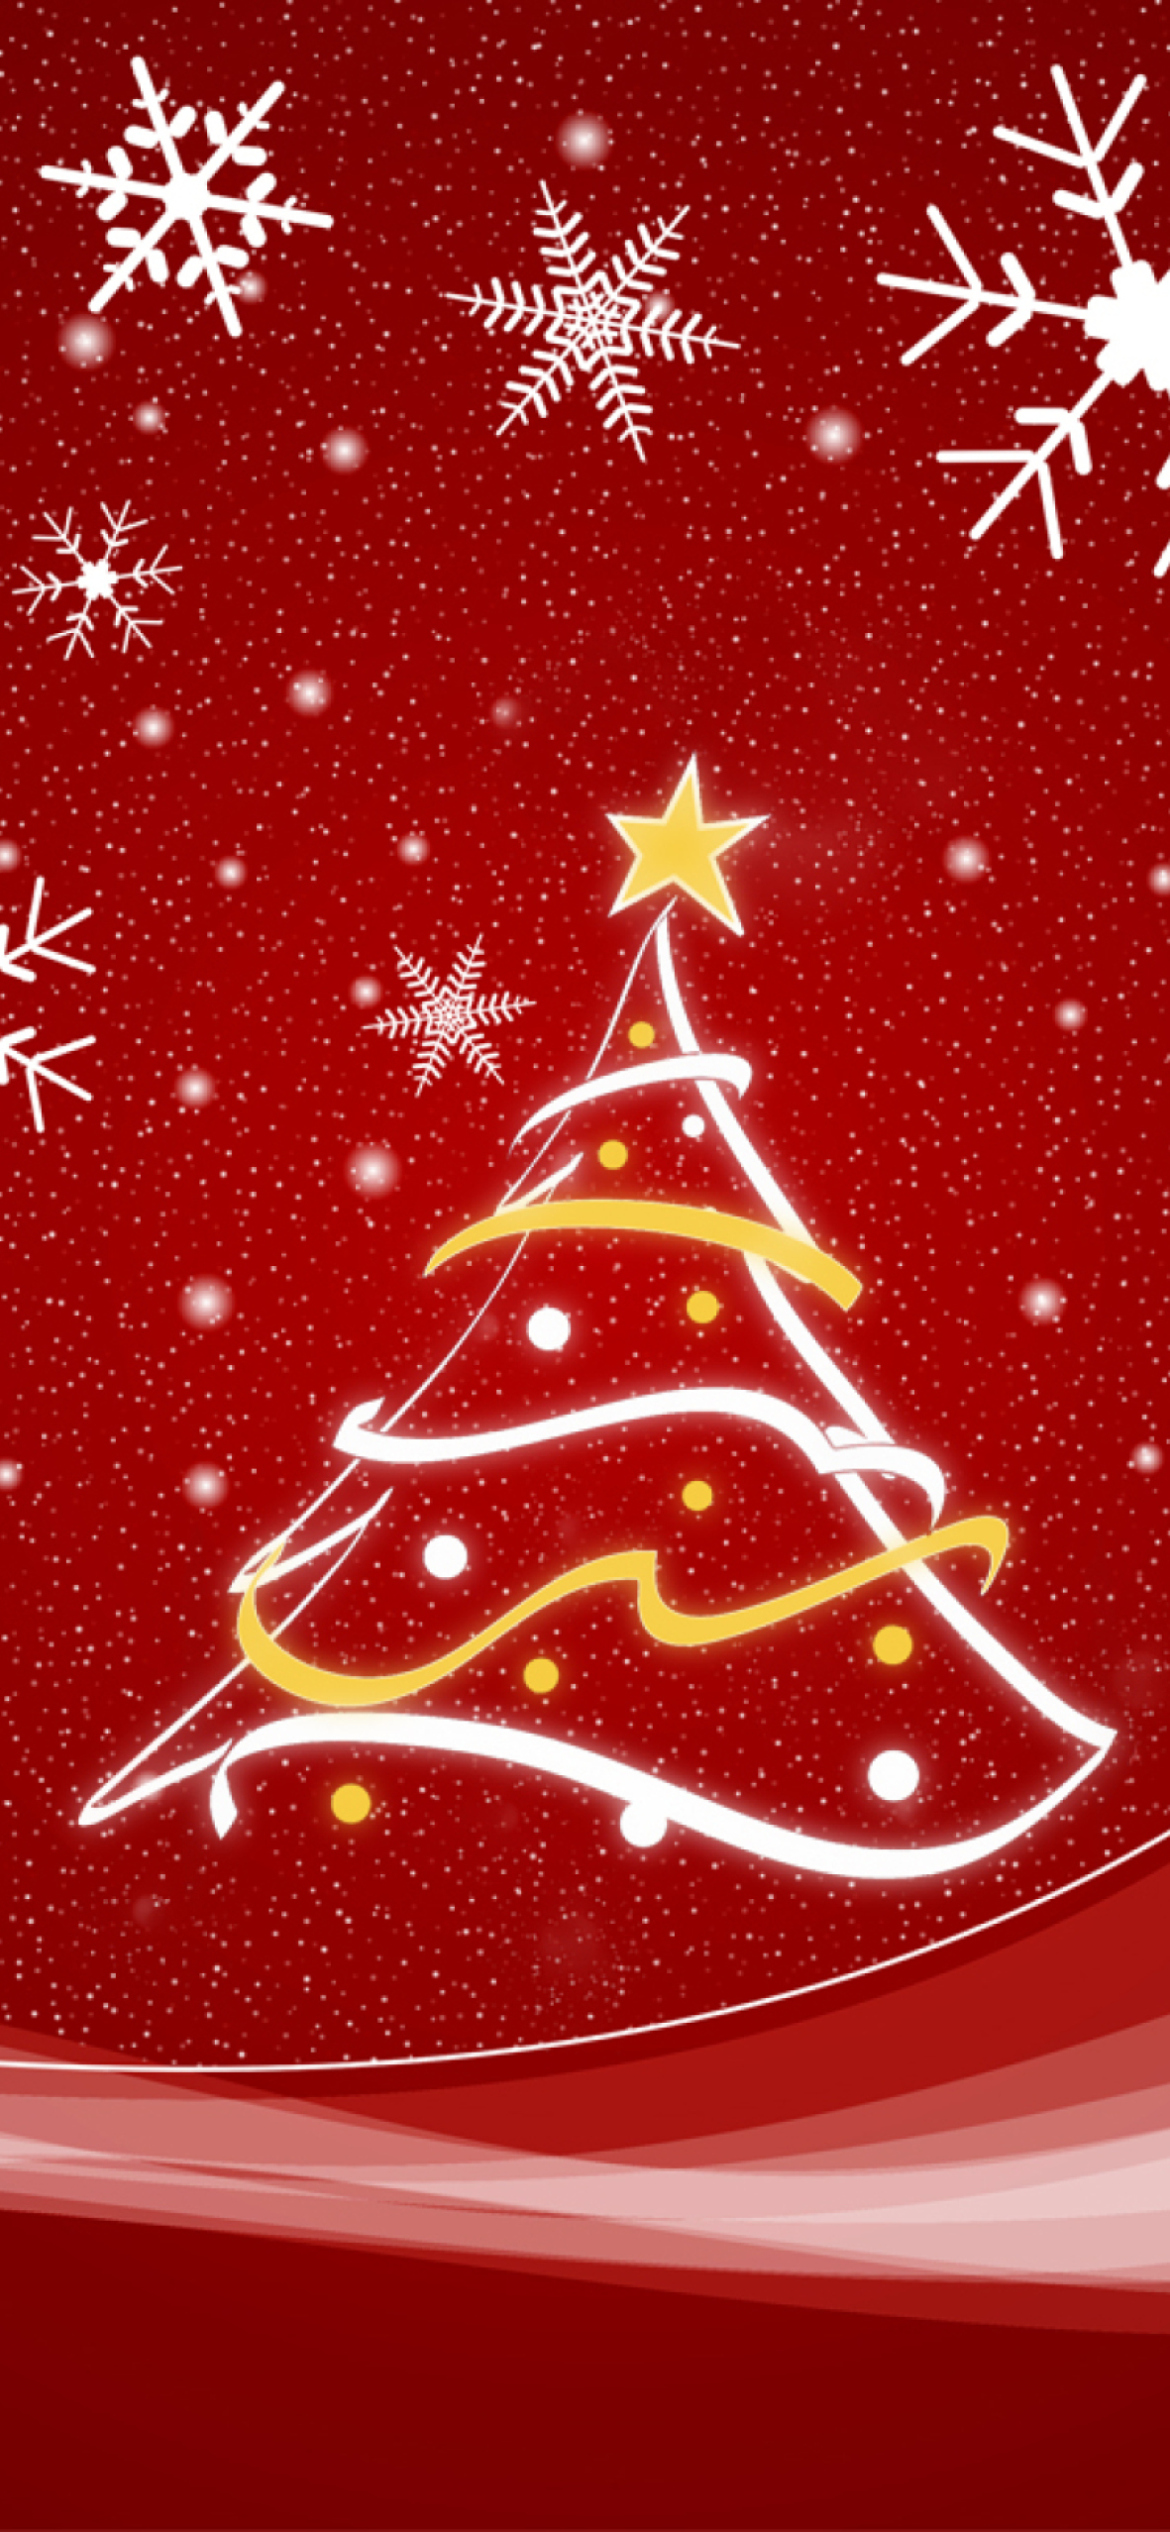 Christmas Tree wallpaper 1170x2532